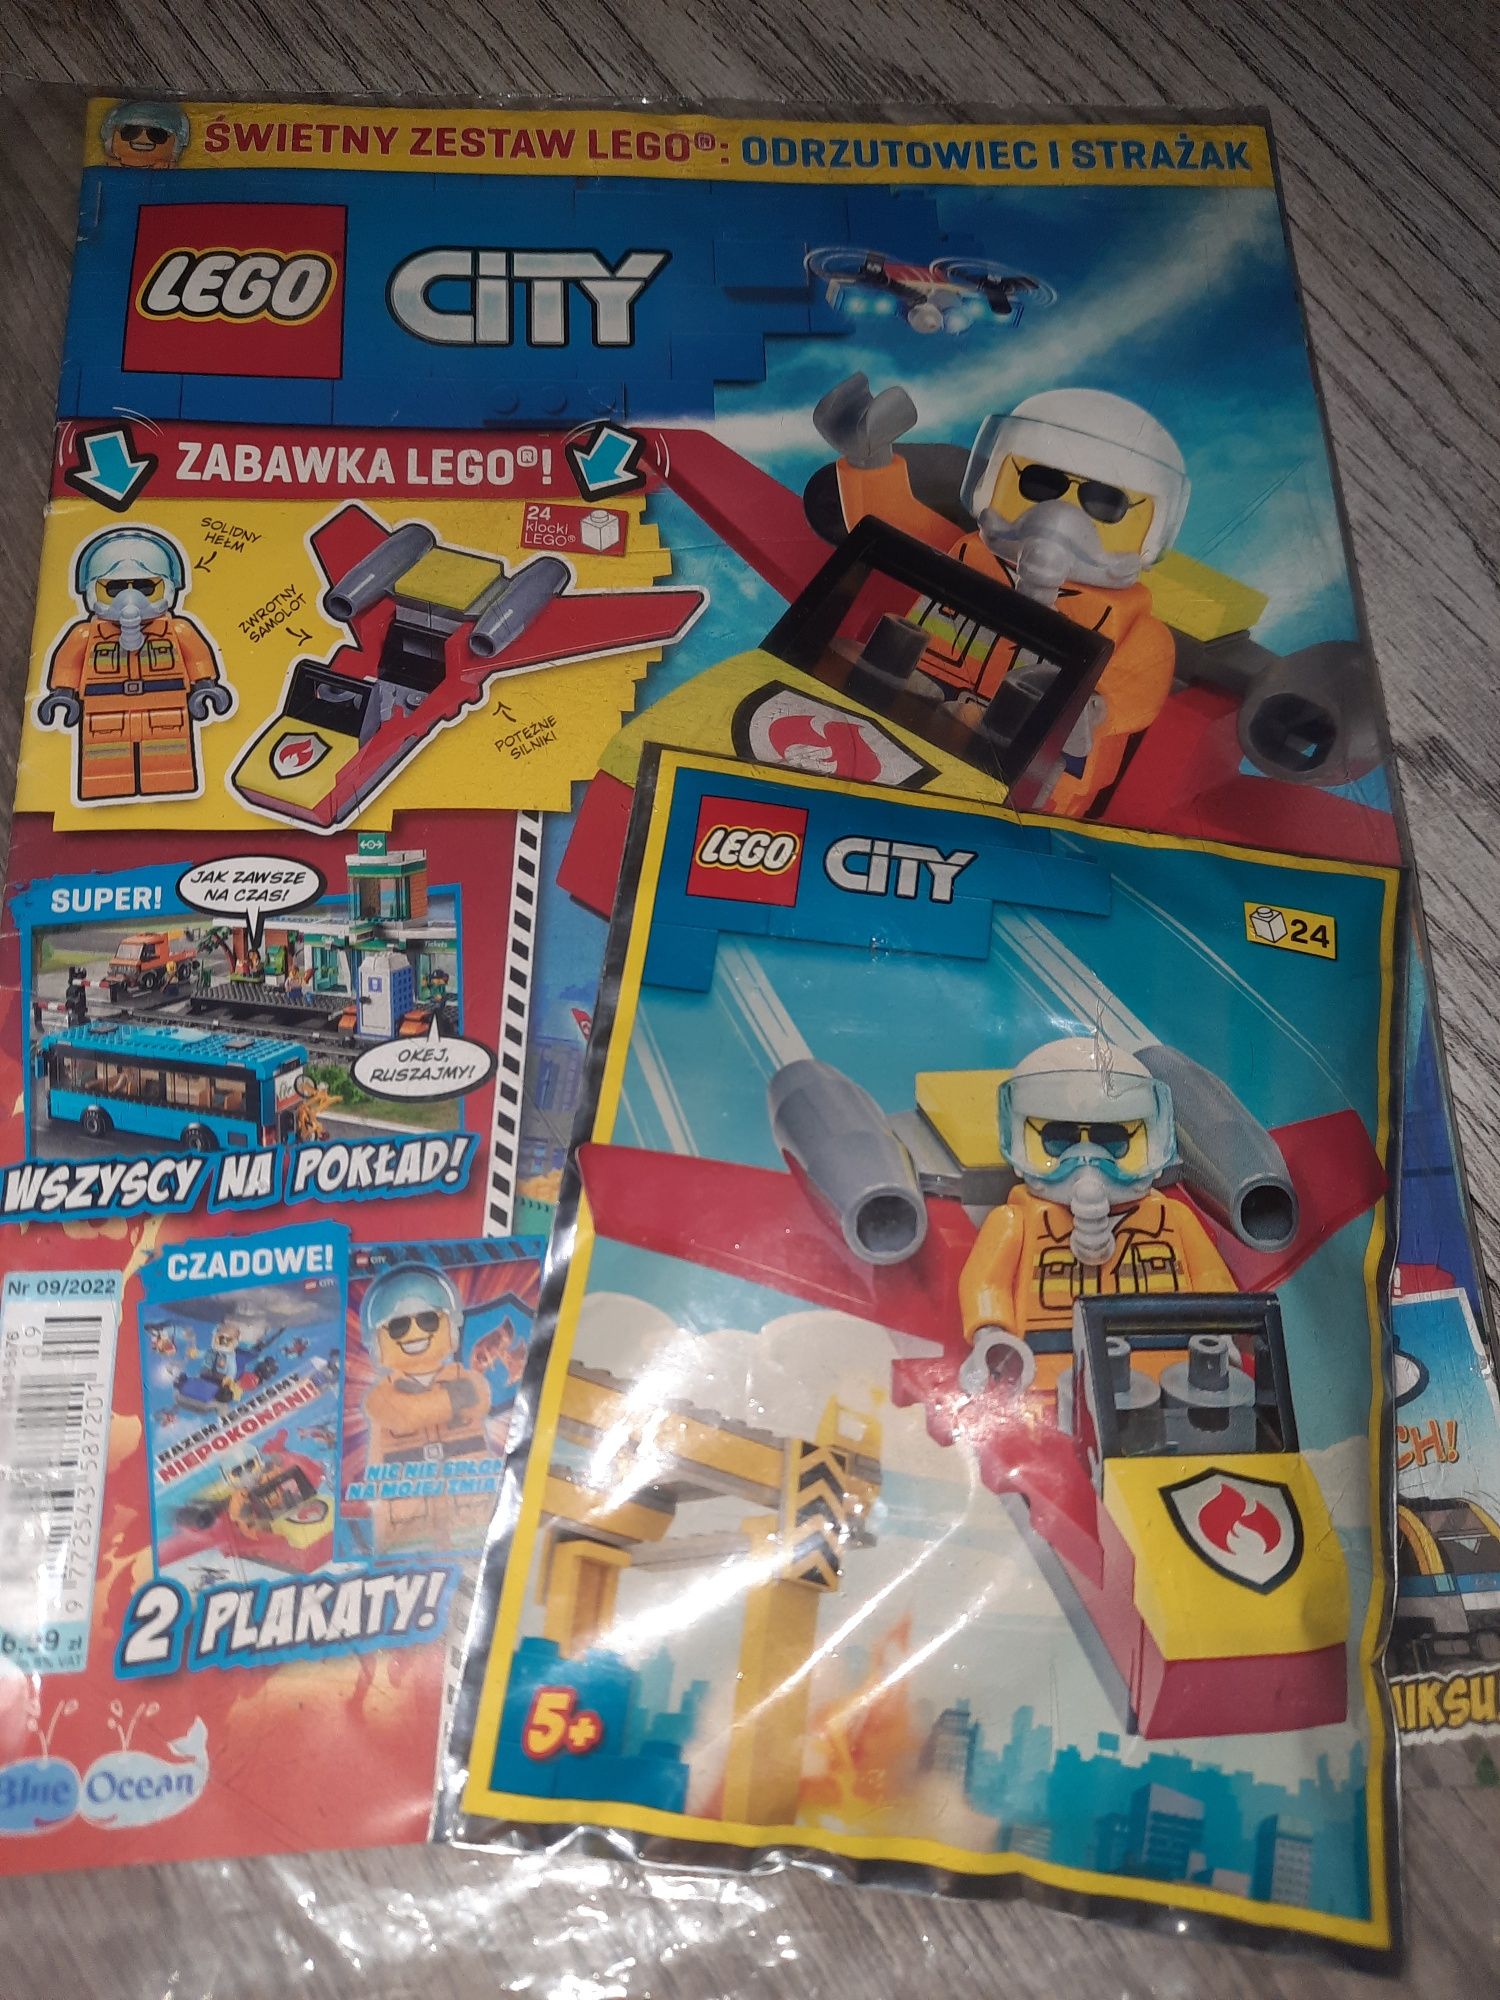 Lego City gazetka z saszetką Strażakiem i odrzutowiec